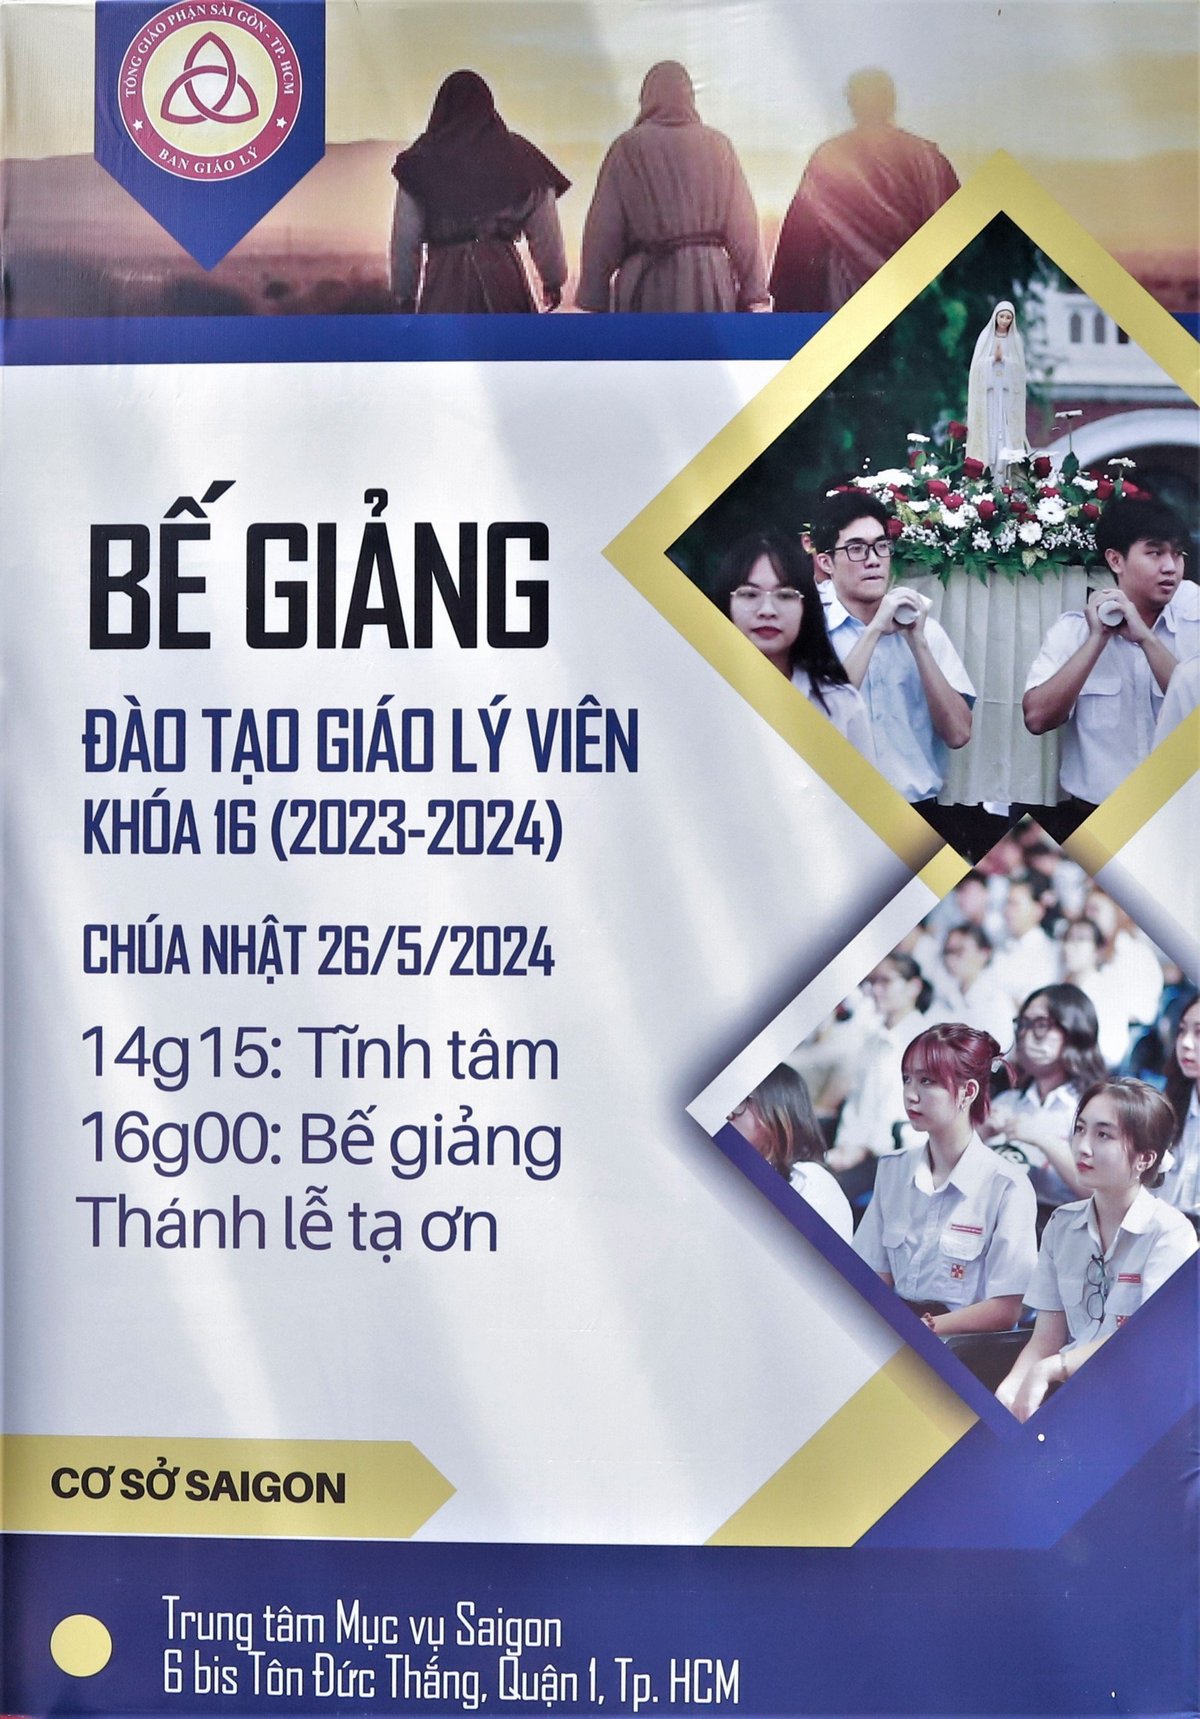 Tổng  Giáo  Phận  Sài Gòn: Bế giảng các lớp đào tạo Giáo lý viên cấp Giáo phận Khóa 16, năm  học 2023 - 2024